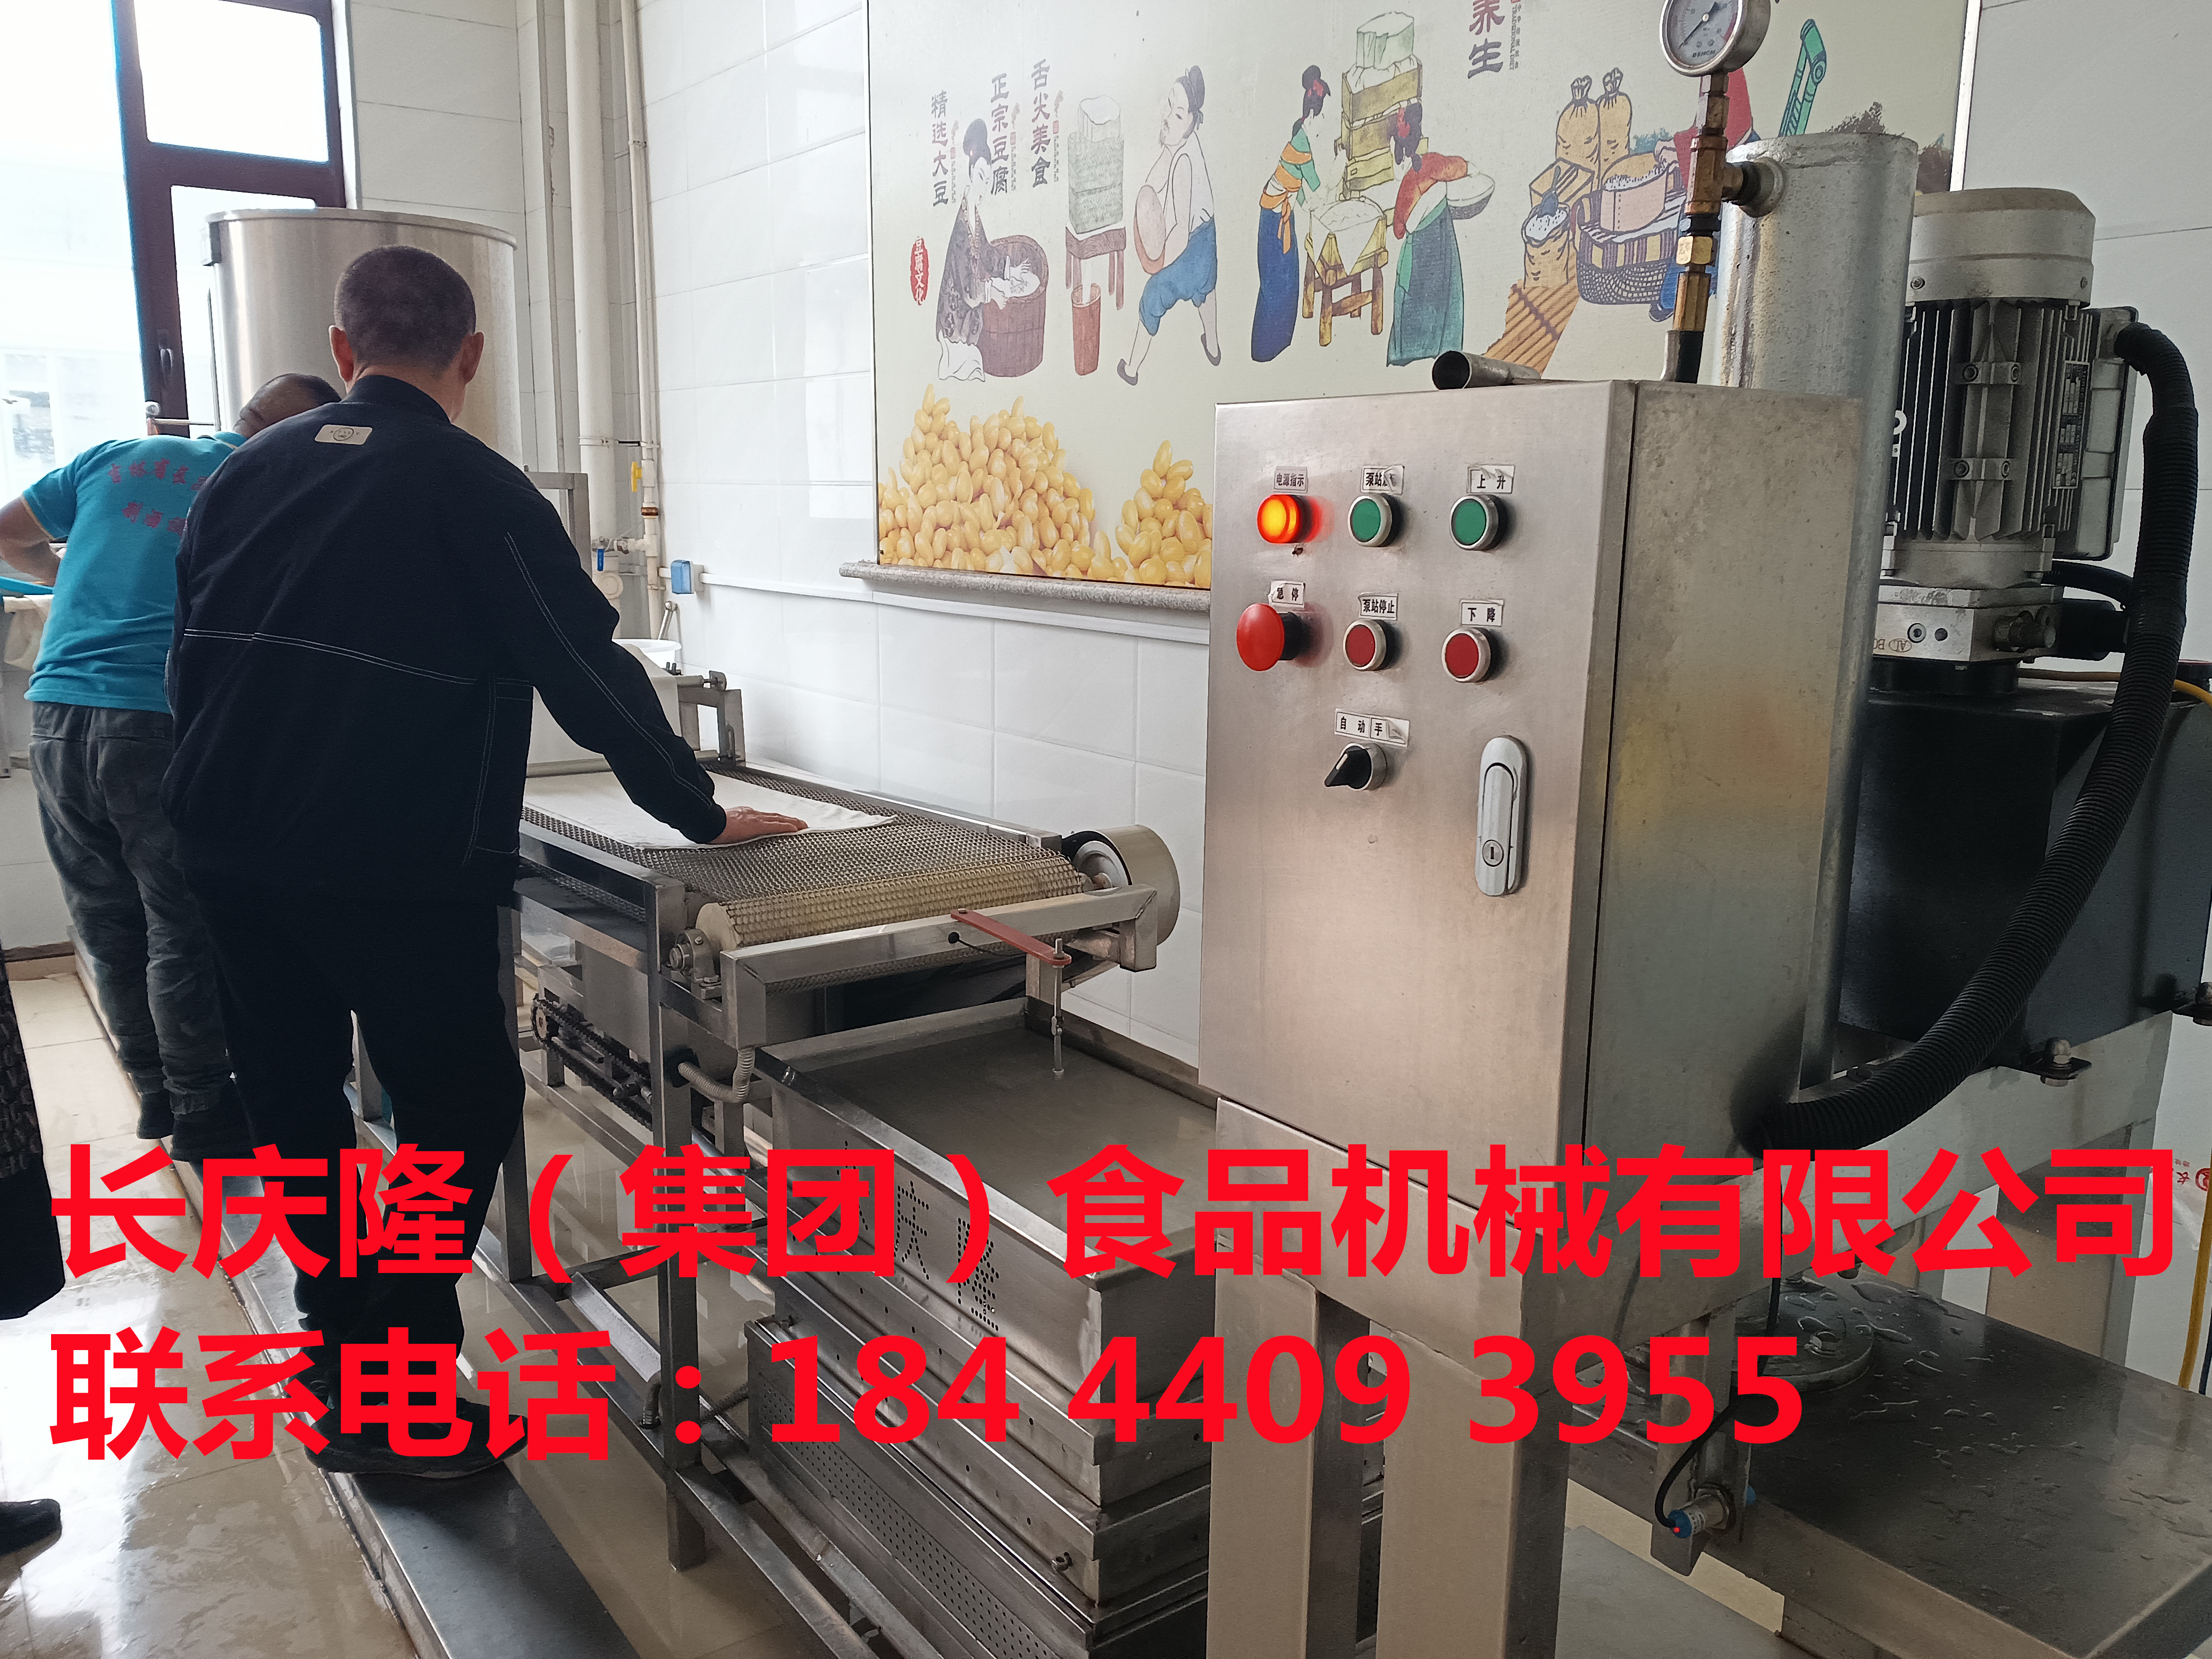 磐石客户购买豆腐机全套设备，感谢您对长庆隆的支持与信任，长庆隆祝您生意兴隆，财运亨通 (5).jpg